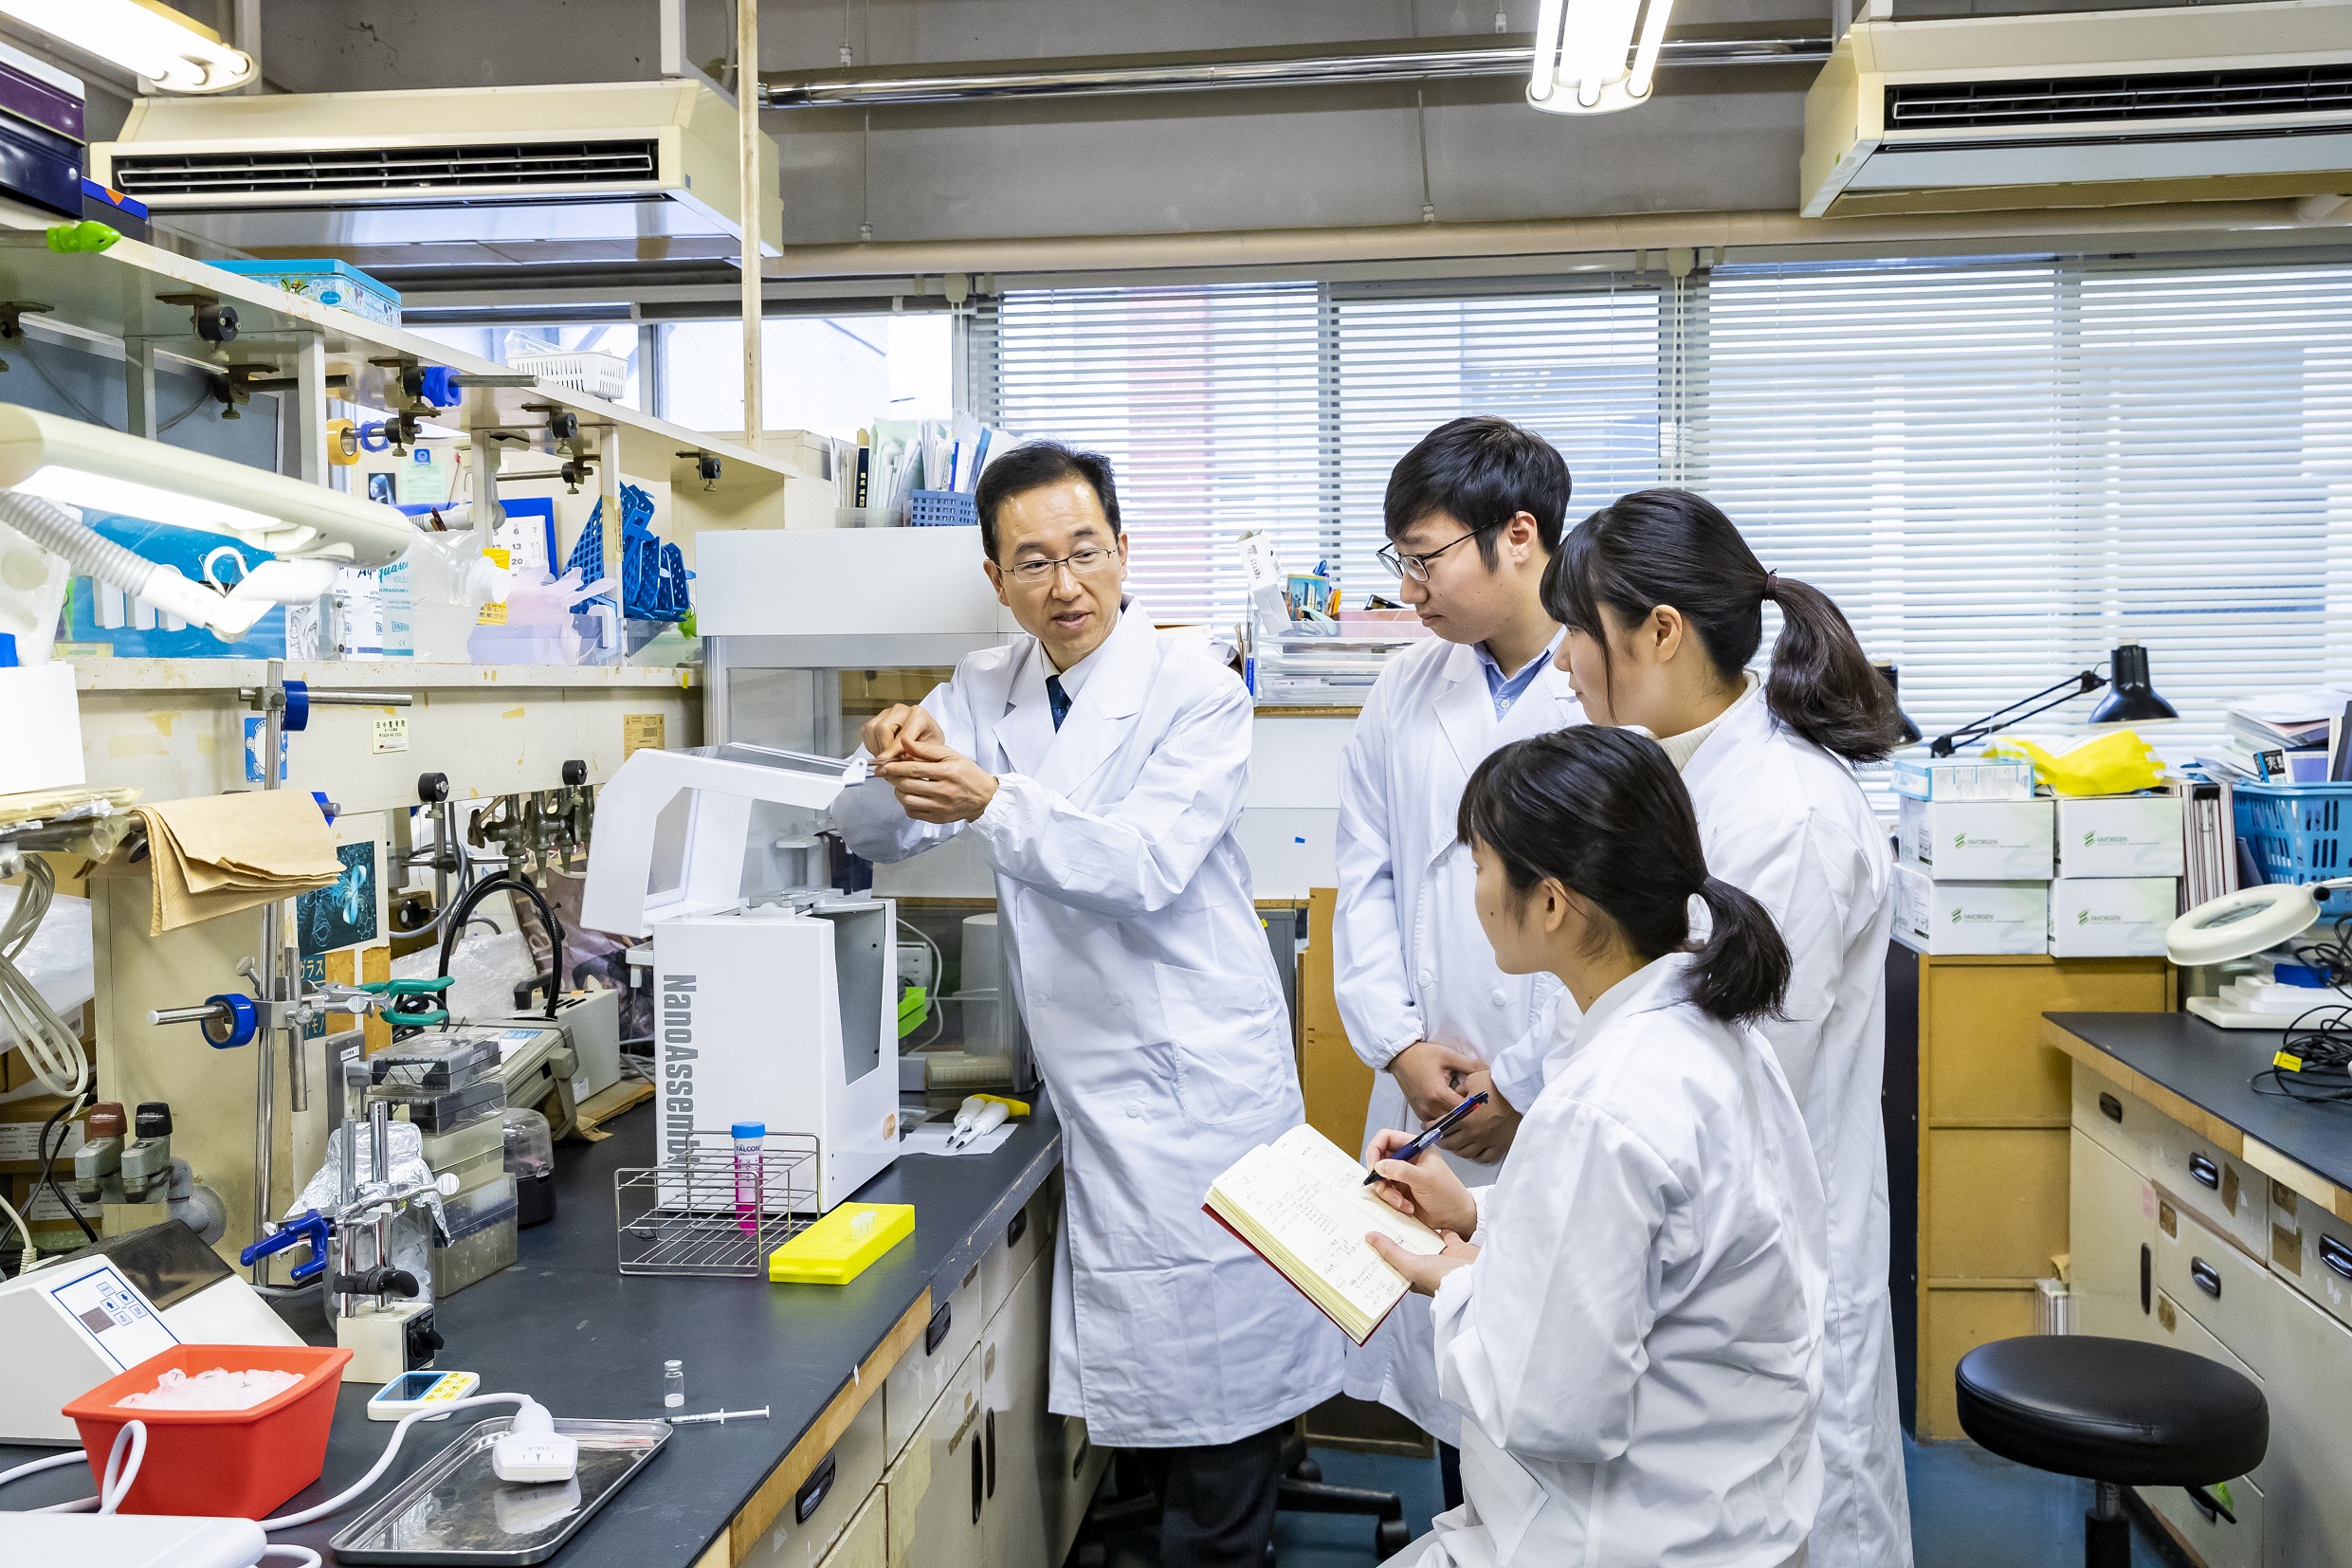 薬物送達学教室 根岸洋一教授の筋ジストロフィー疾患治療に関するDDS開発の研究成果が日本経済新聞朝刊に取り上げられました